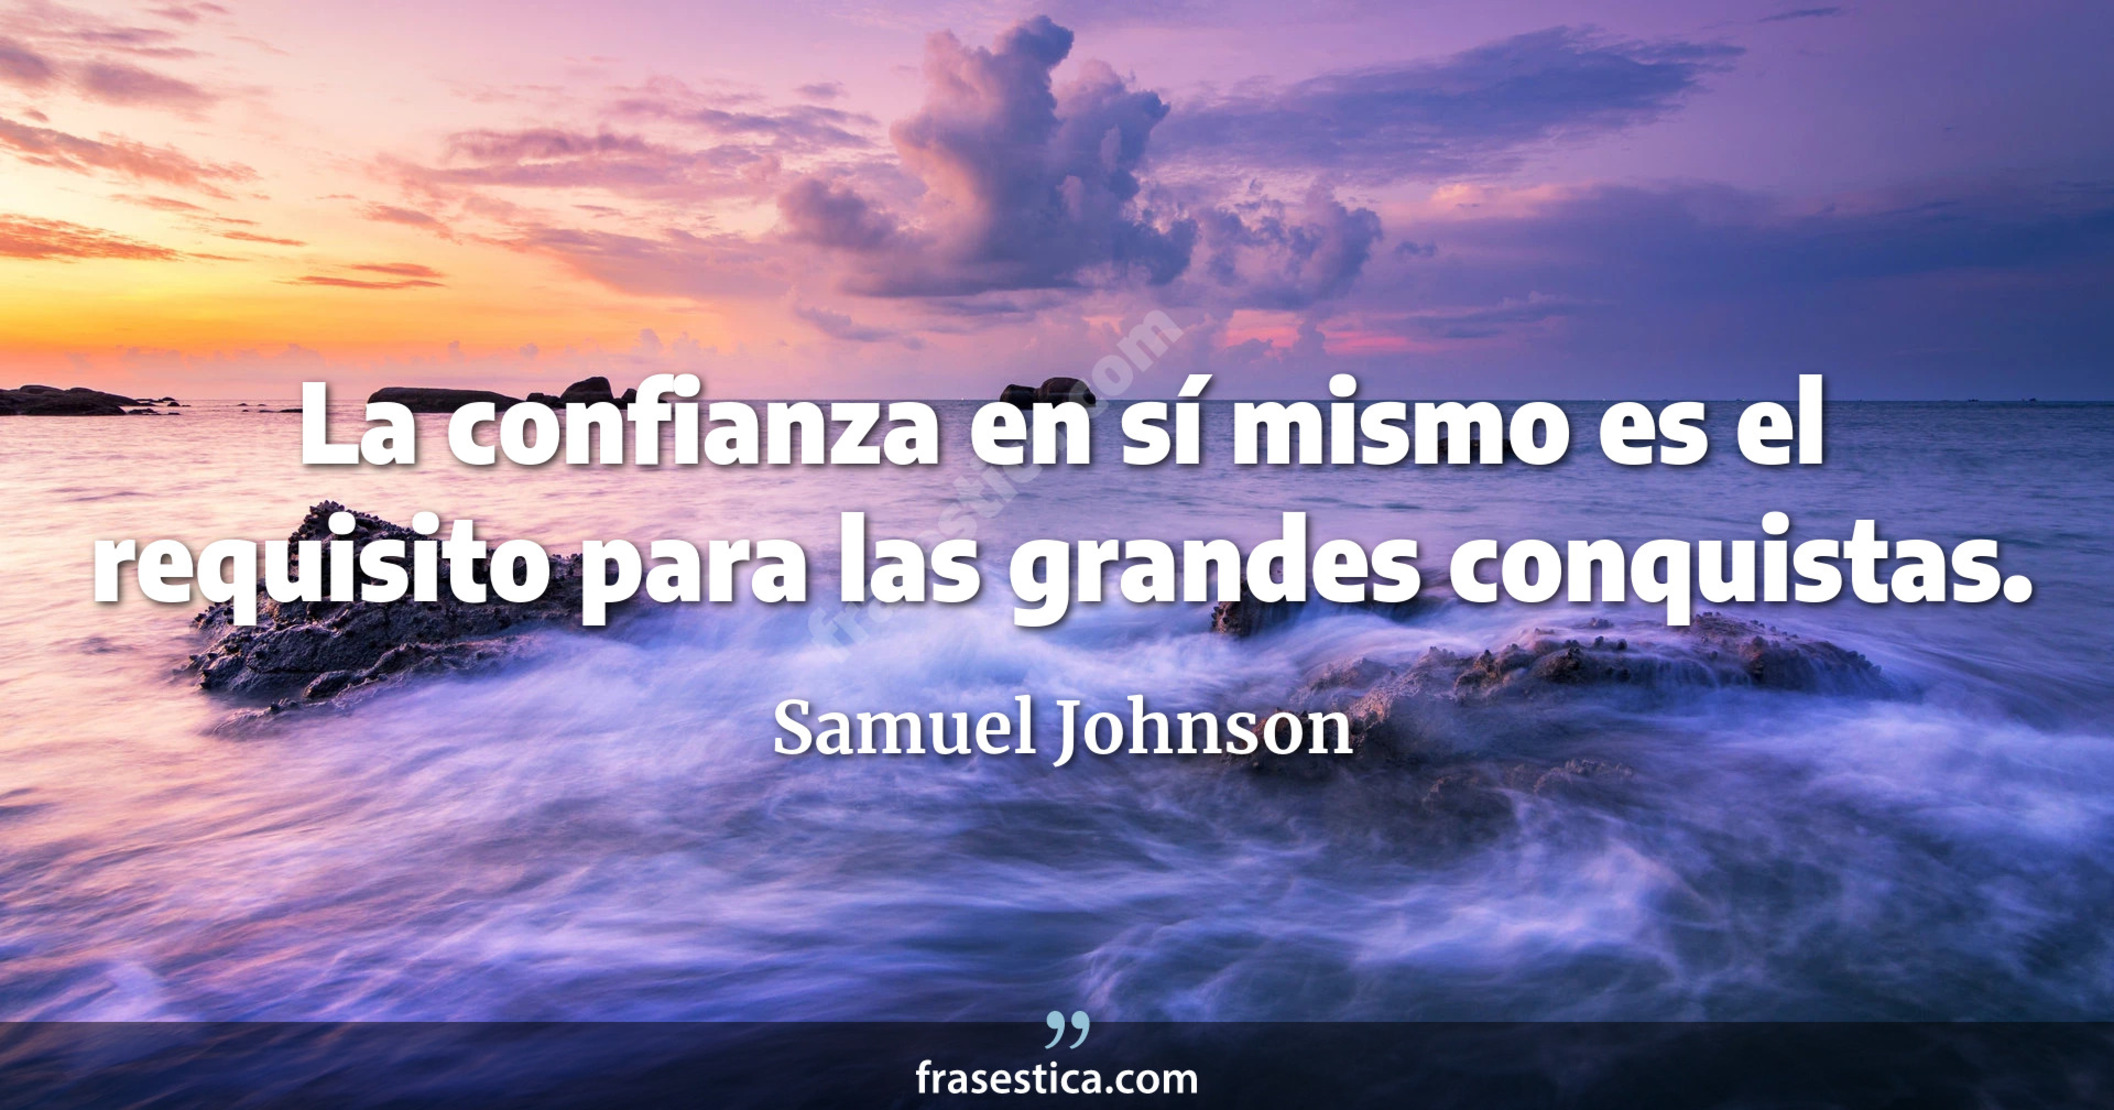 La confianza en sí mismo es el requisito para las grandes conquistas. - Samuel Johnson